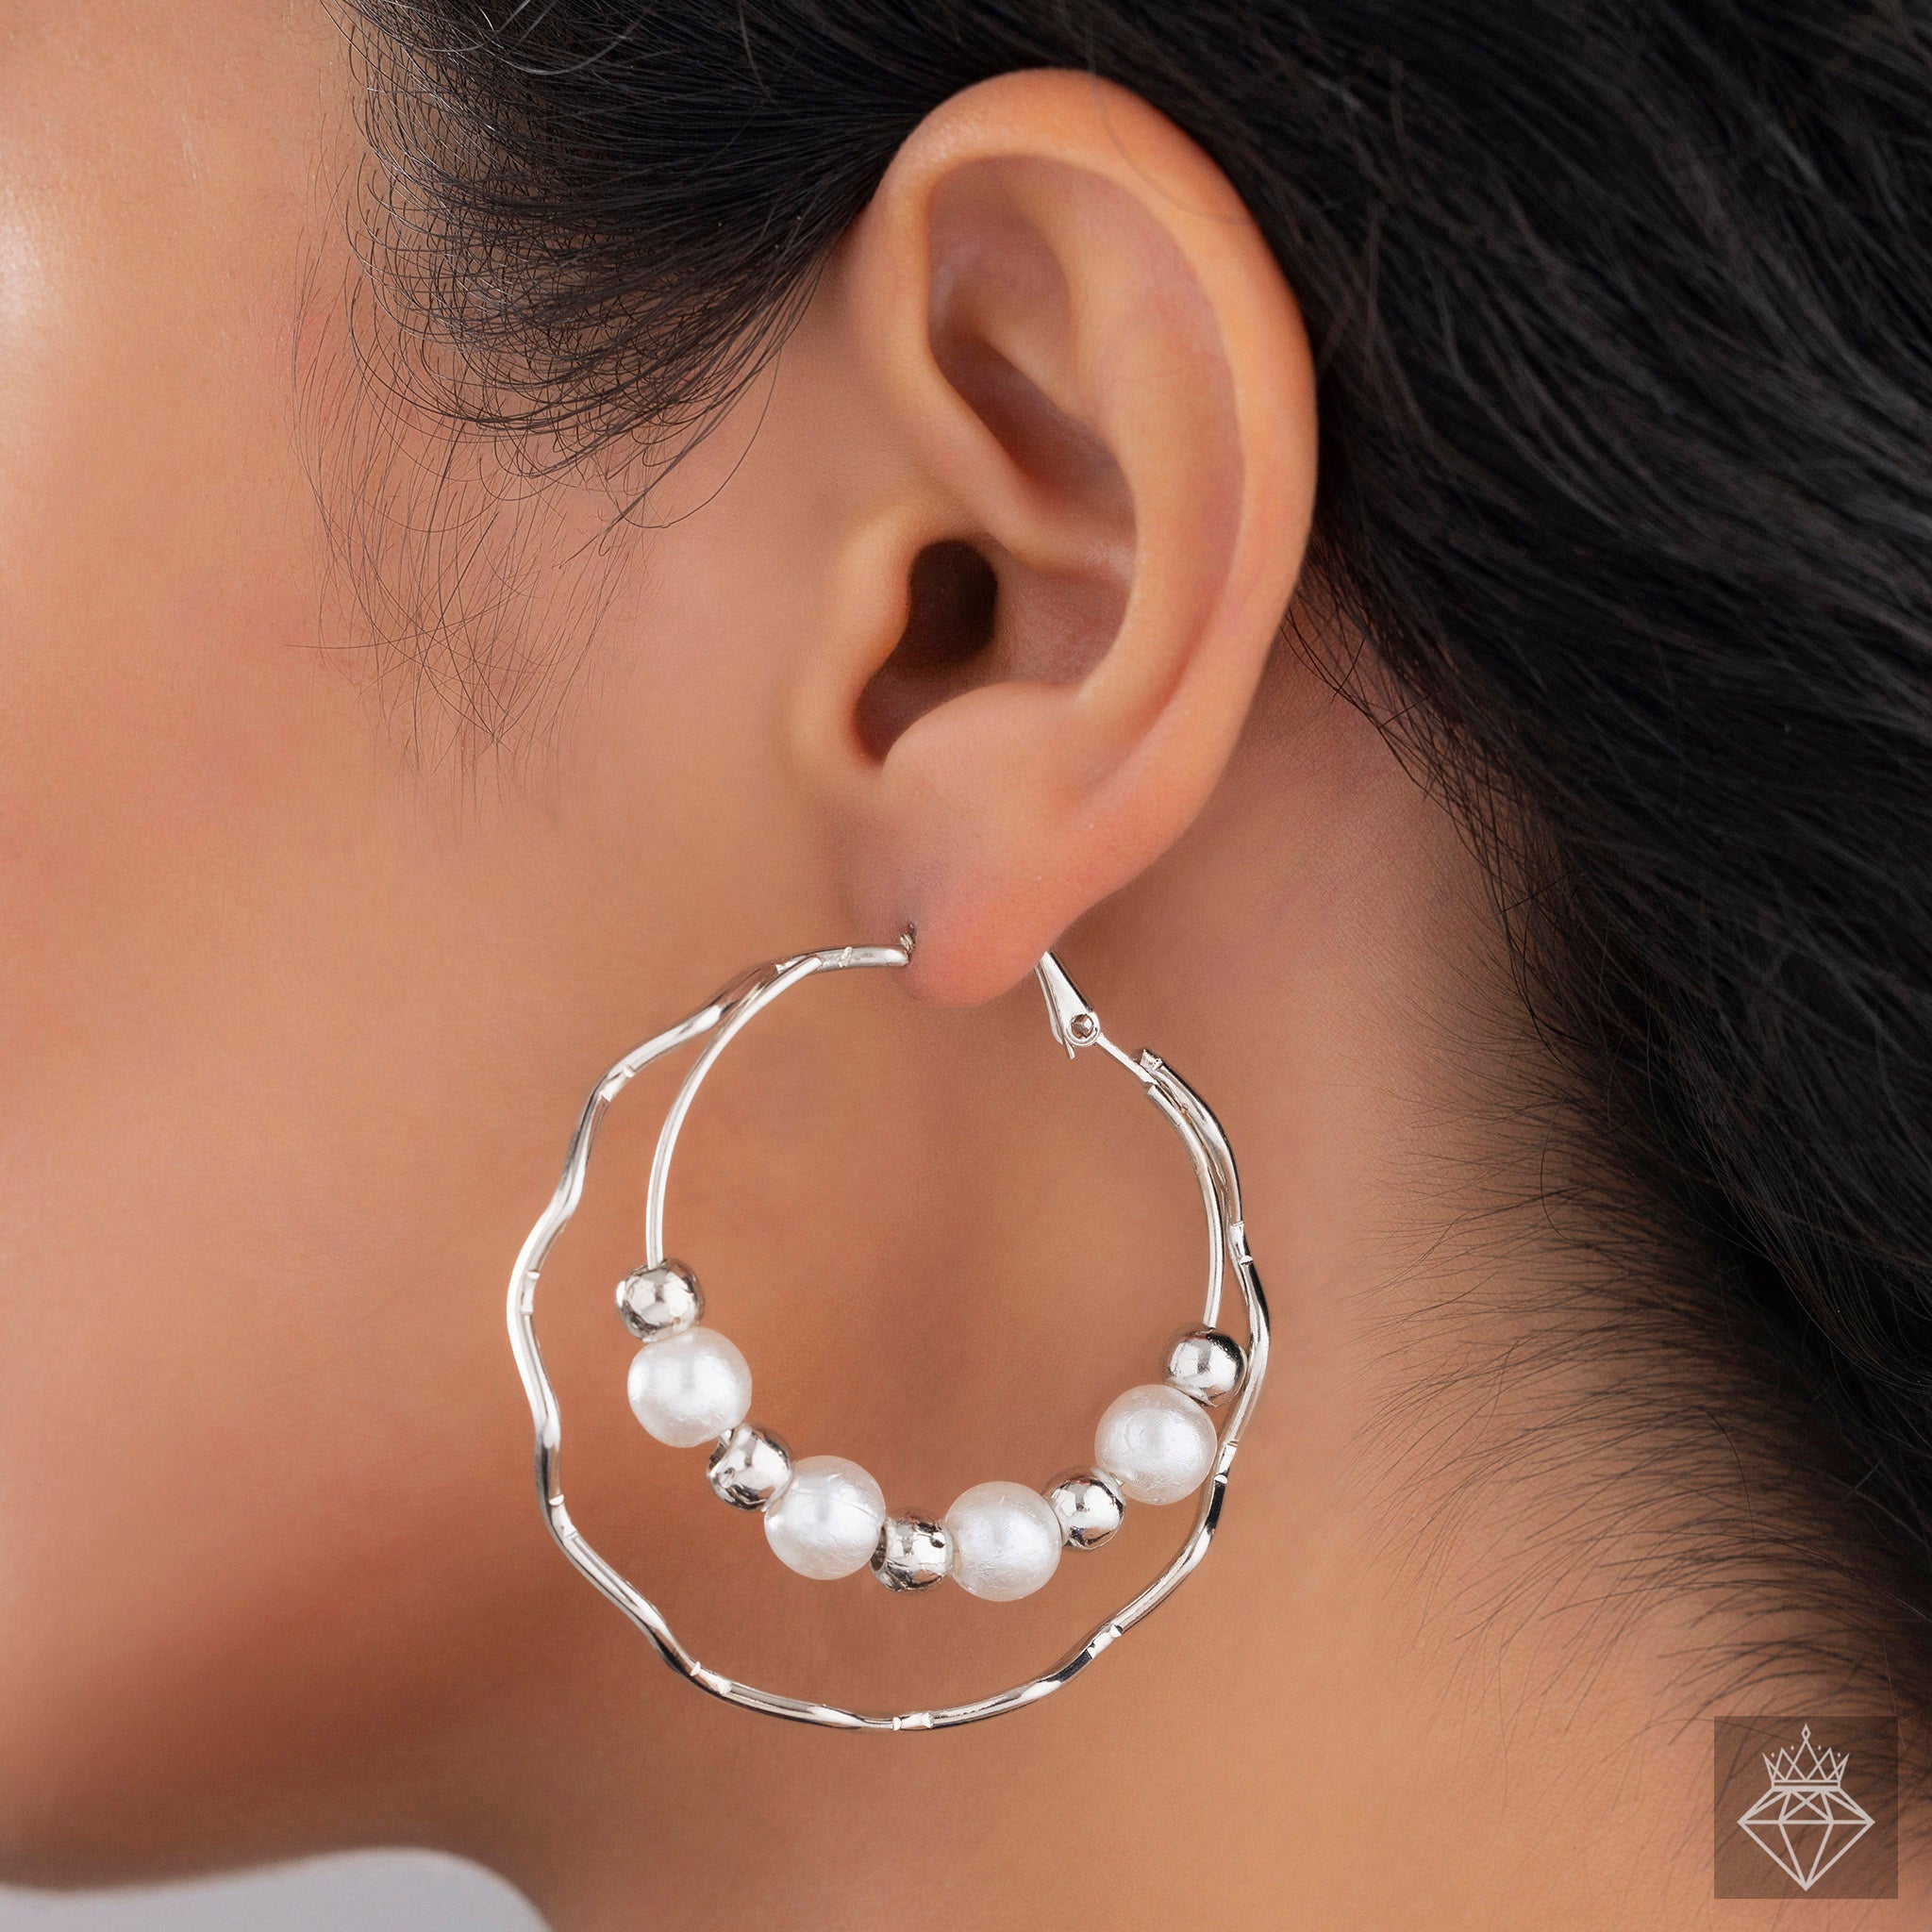 Luxurious Layers: PRAO Silver & Pearl Hoop Earrings